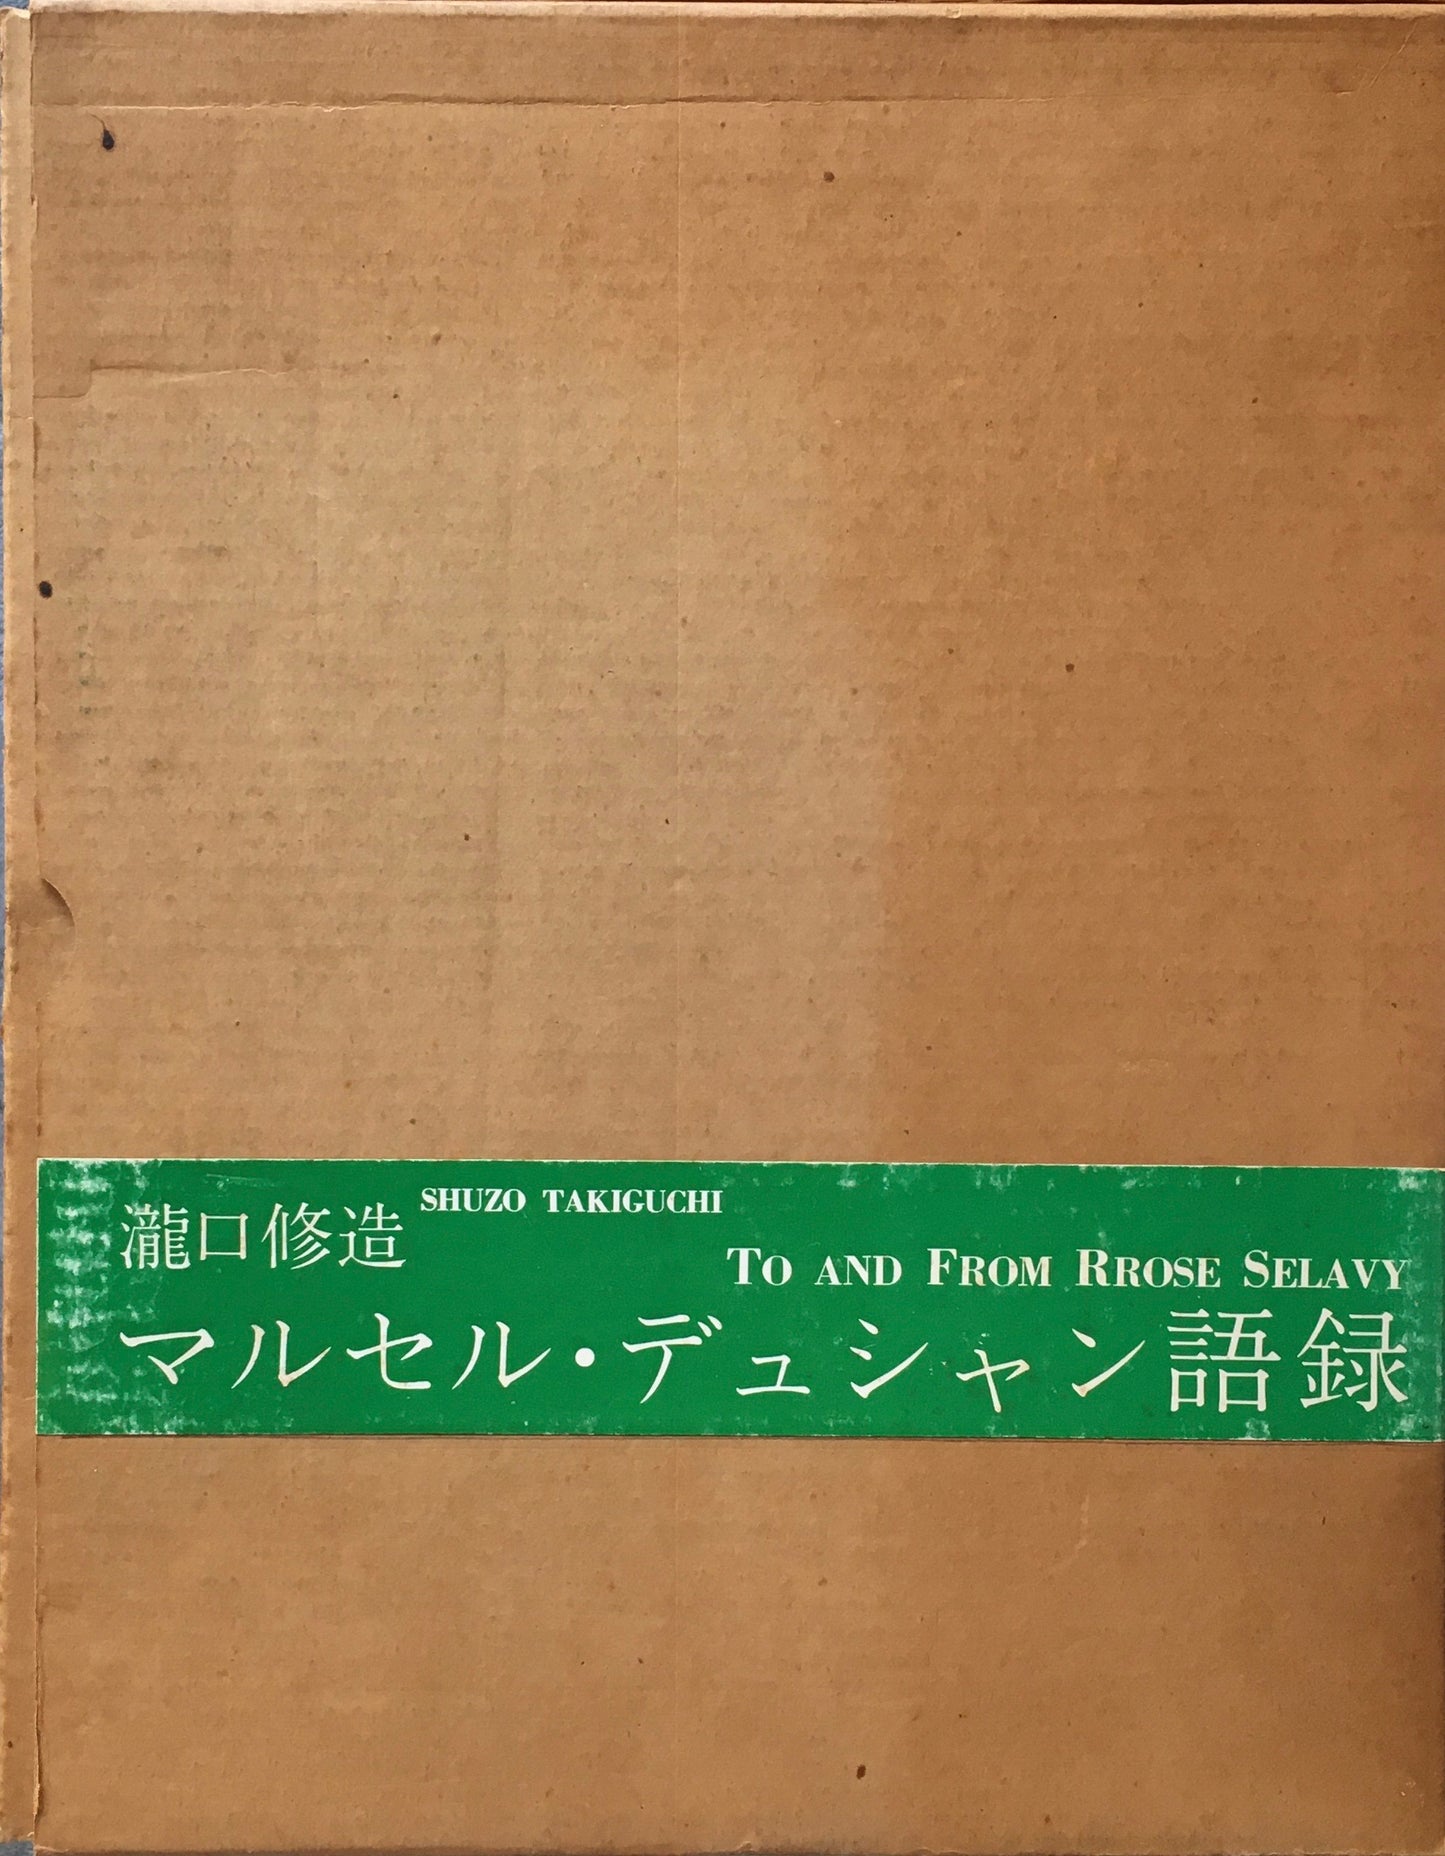 マルセル・デュシャン語録　瀧口修造　B版　限定500部　1968　東京、ローズ・セラヴィ